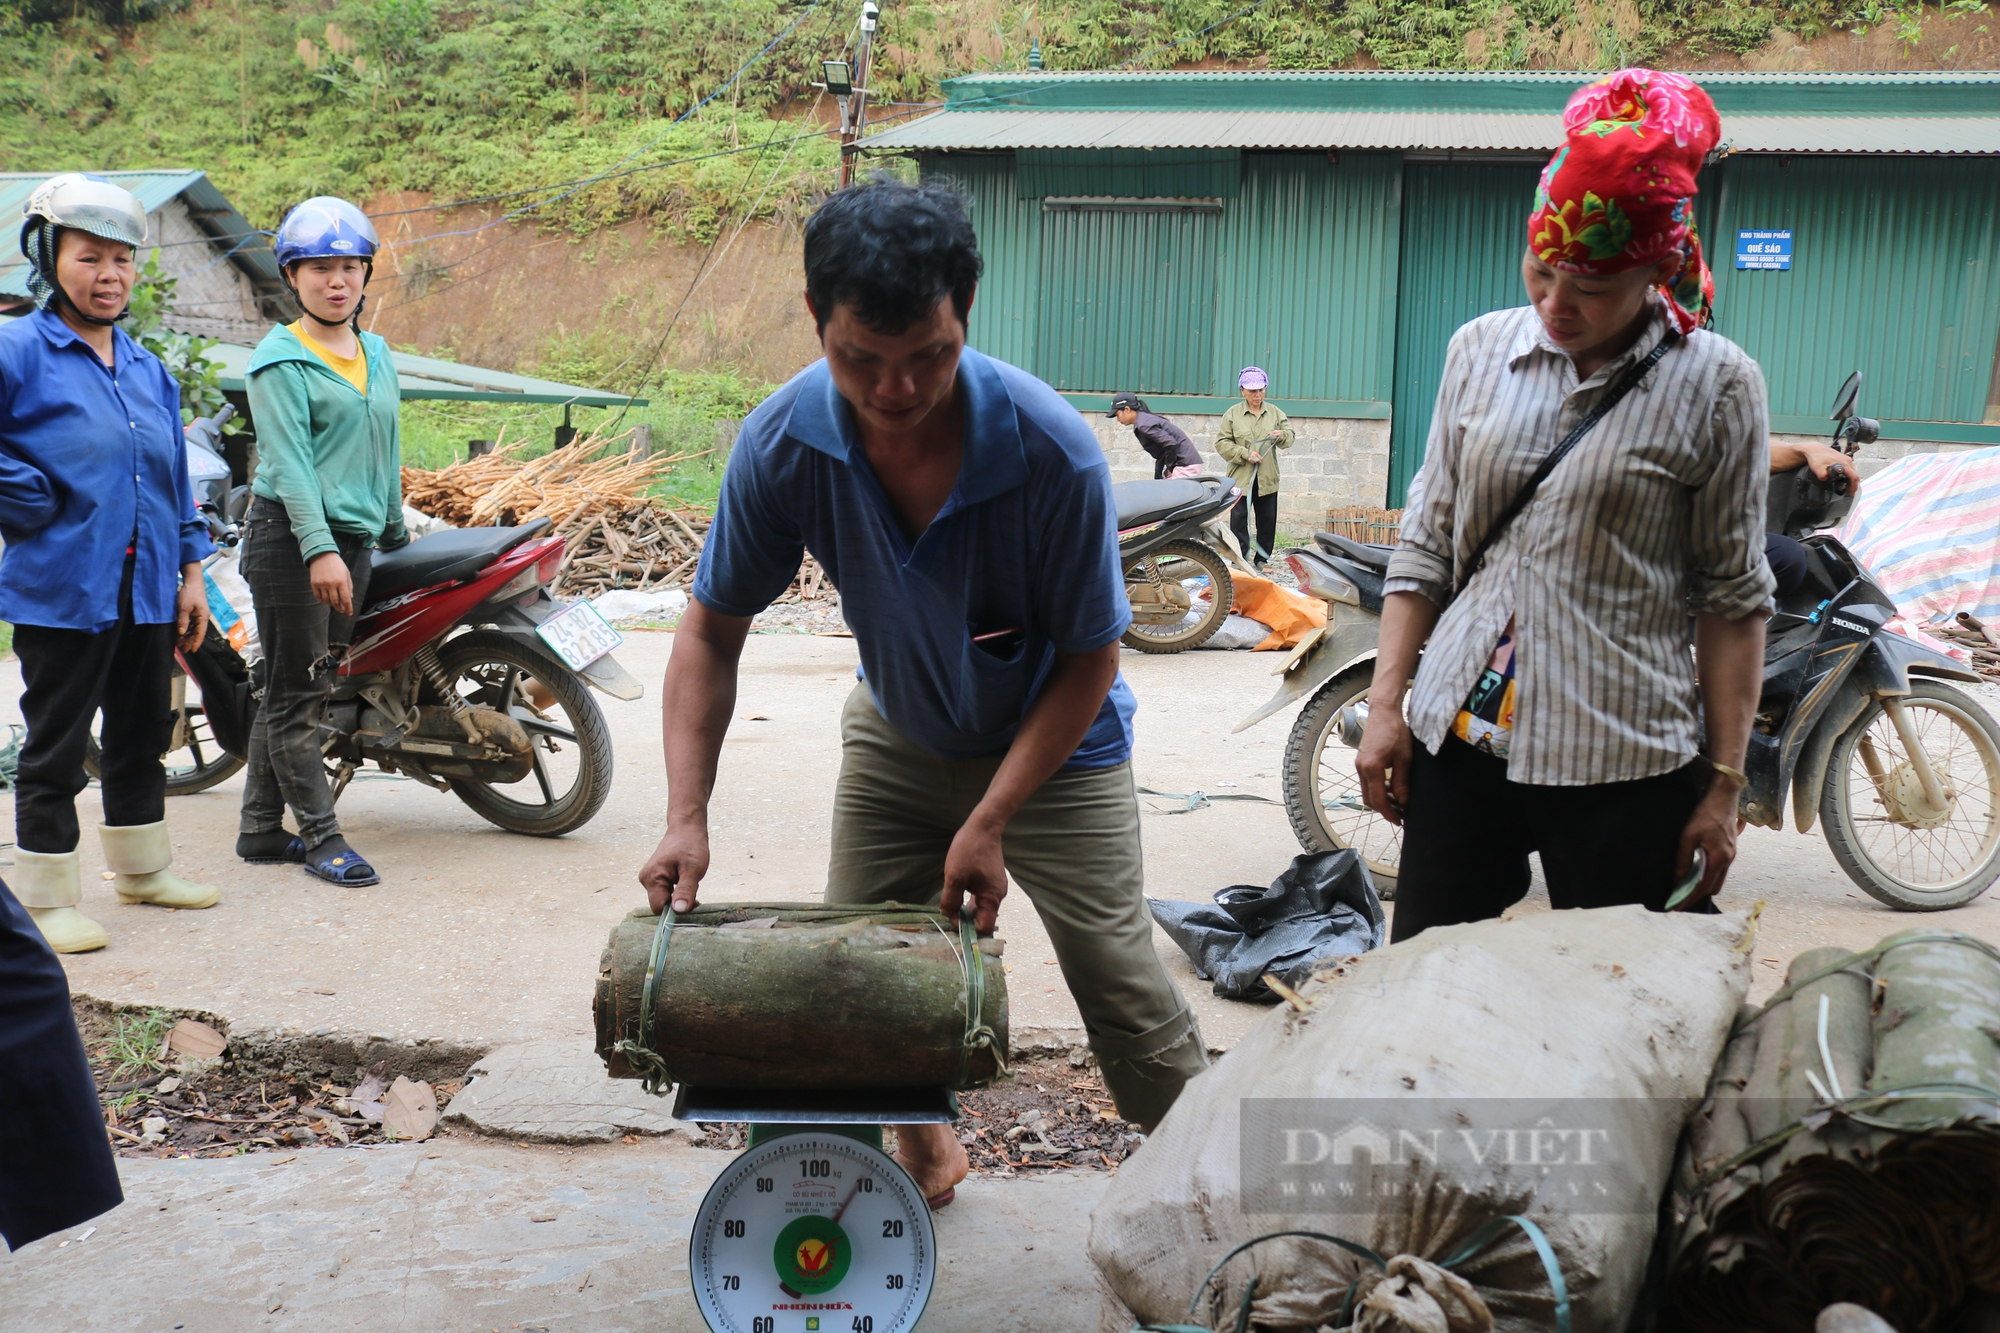 Đưa sản phẩm quế của nông dân Lào Cai vươn ra thị trường thế giới - Ảnh 3.